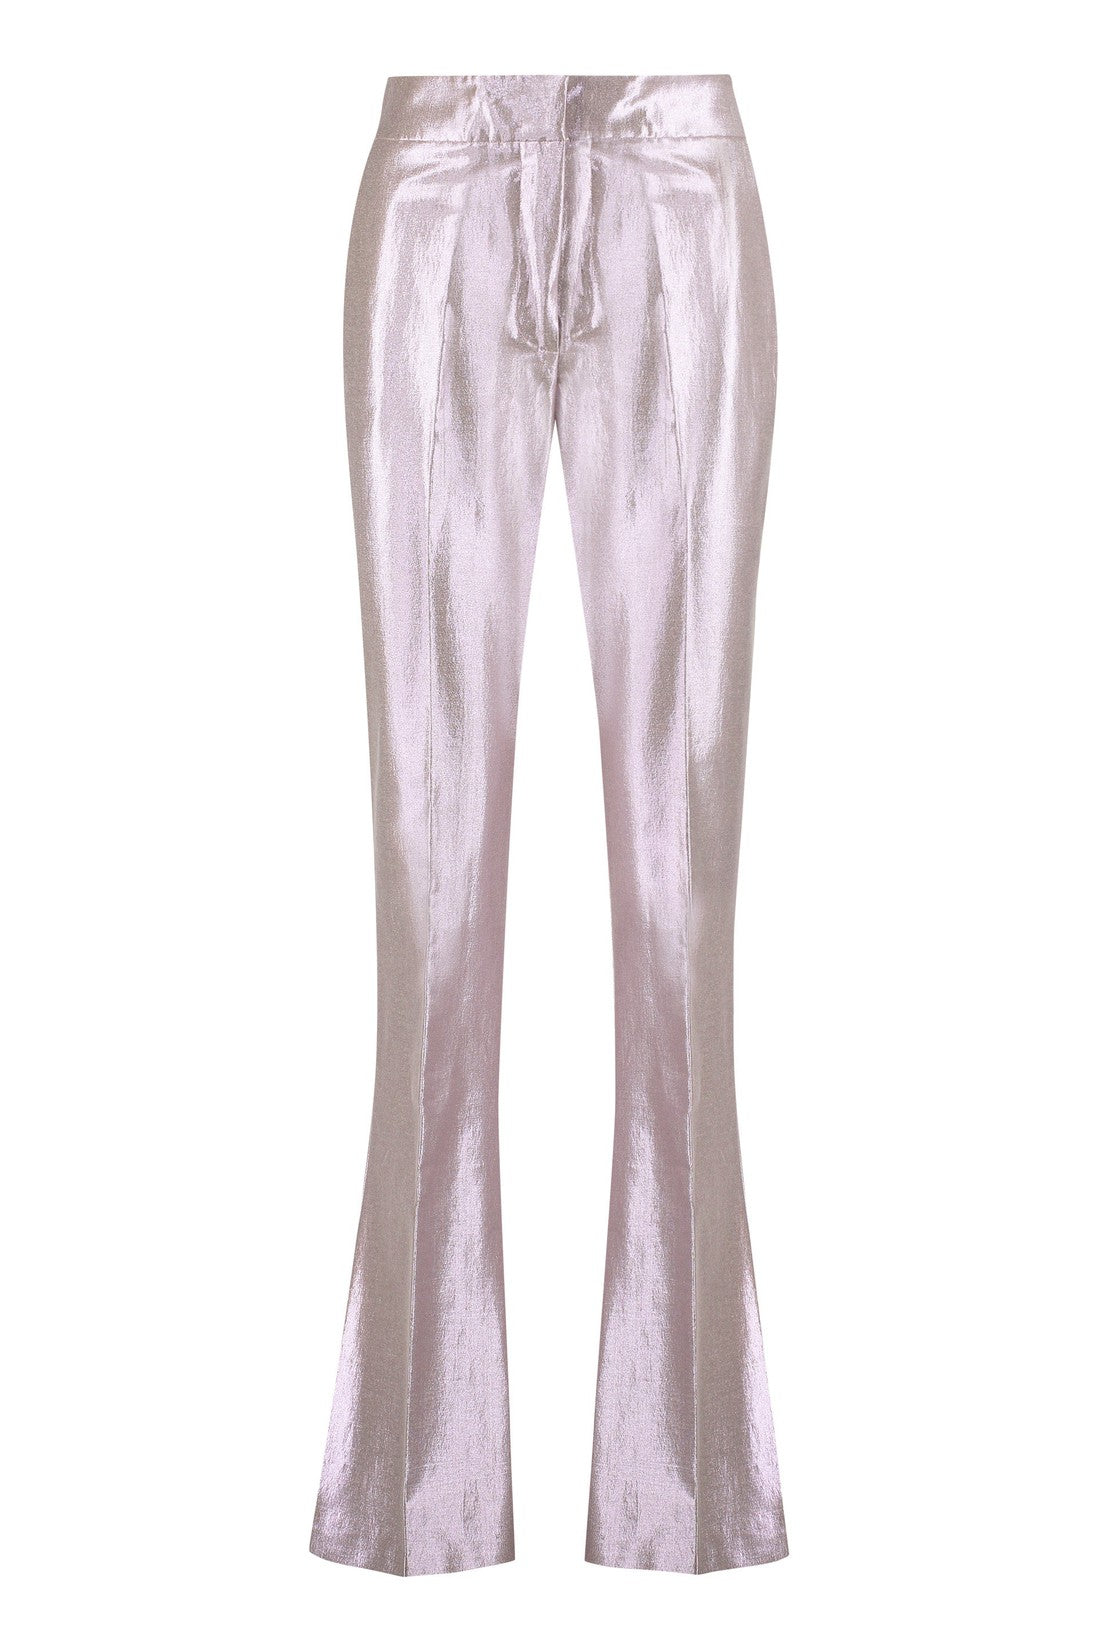 Genny-OUTLET-SALE-Lurex cotton trousers-ARCHIVIST